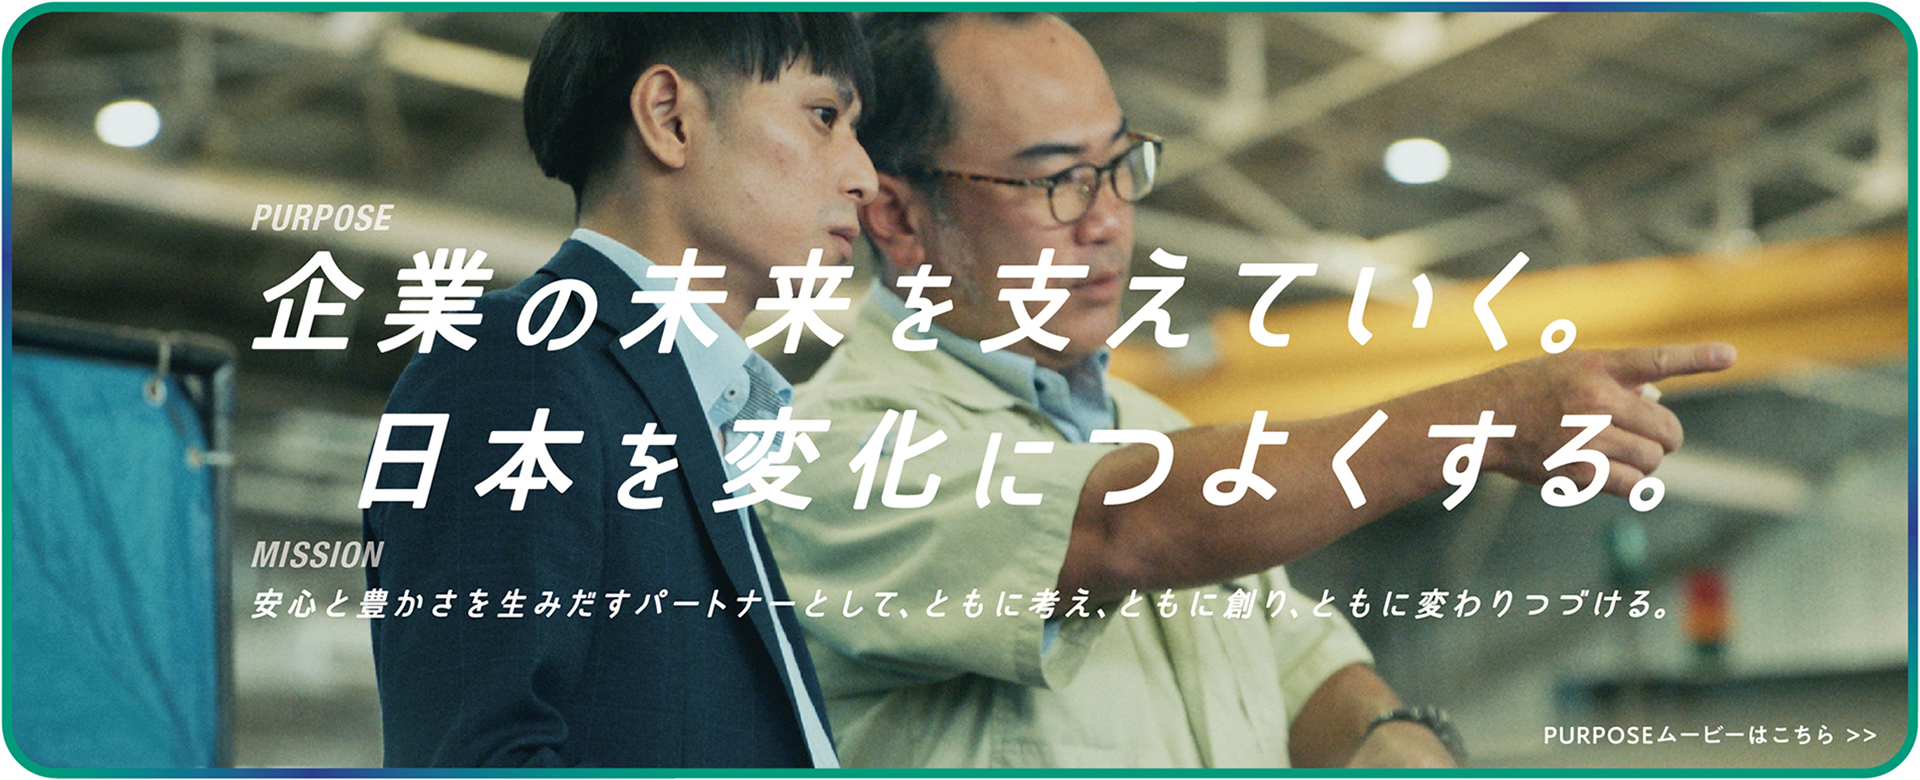 企業の未来を支えていく。日本を変化につよくする。